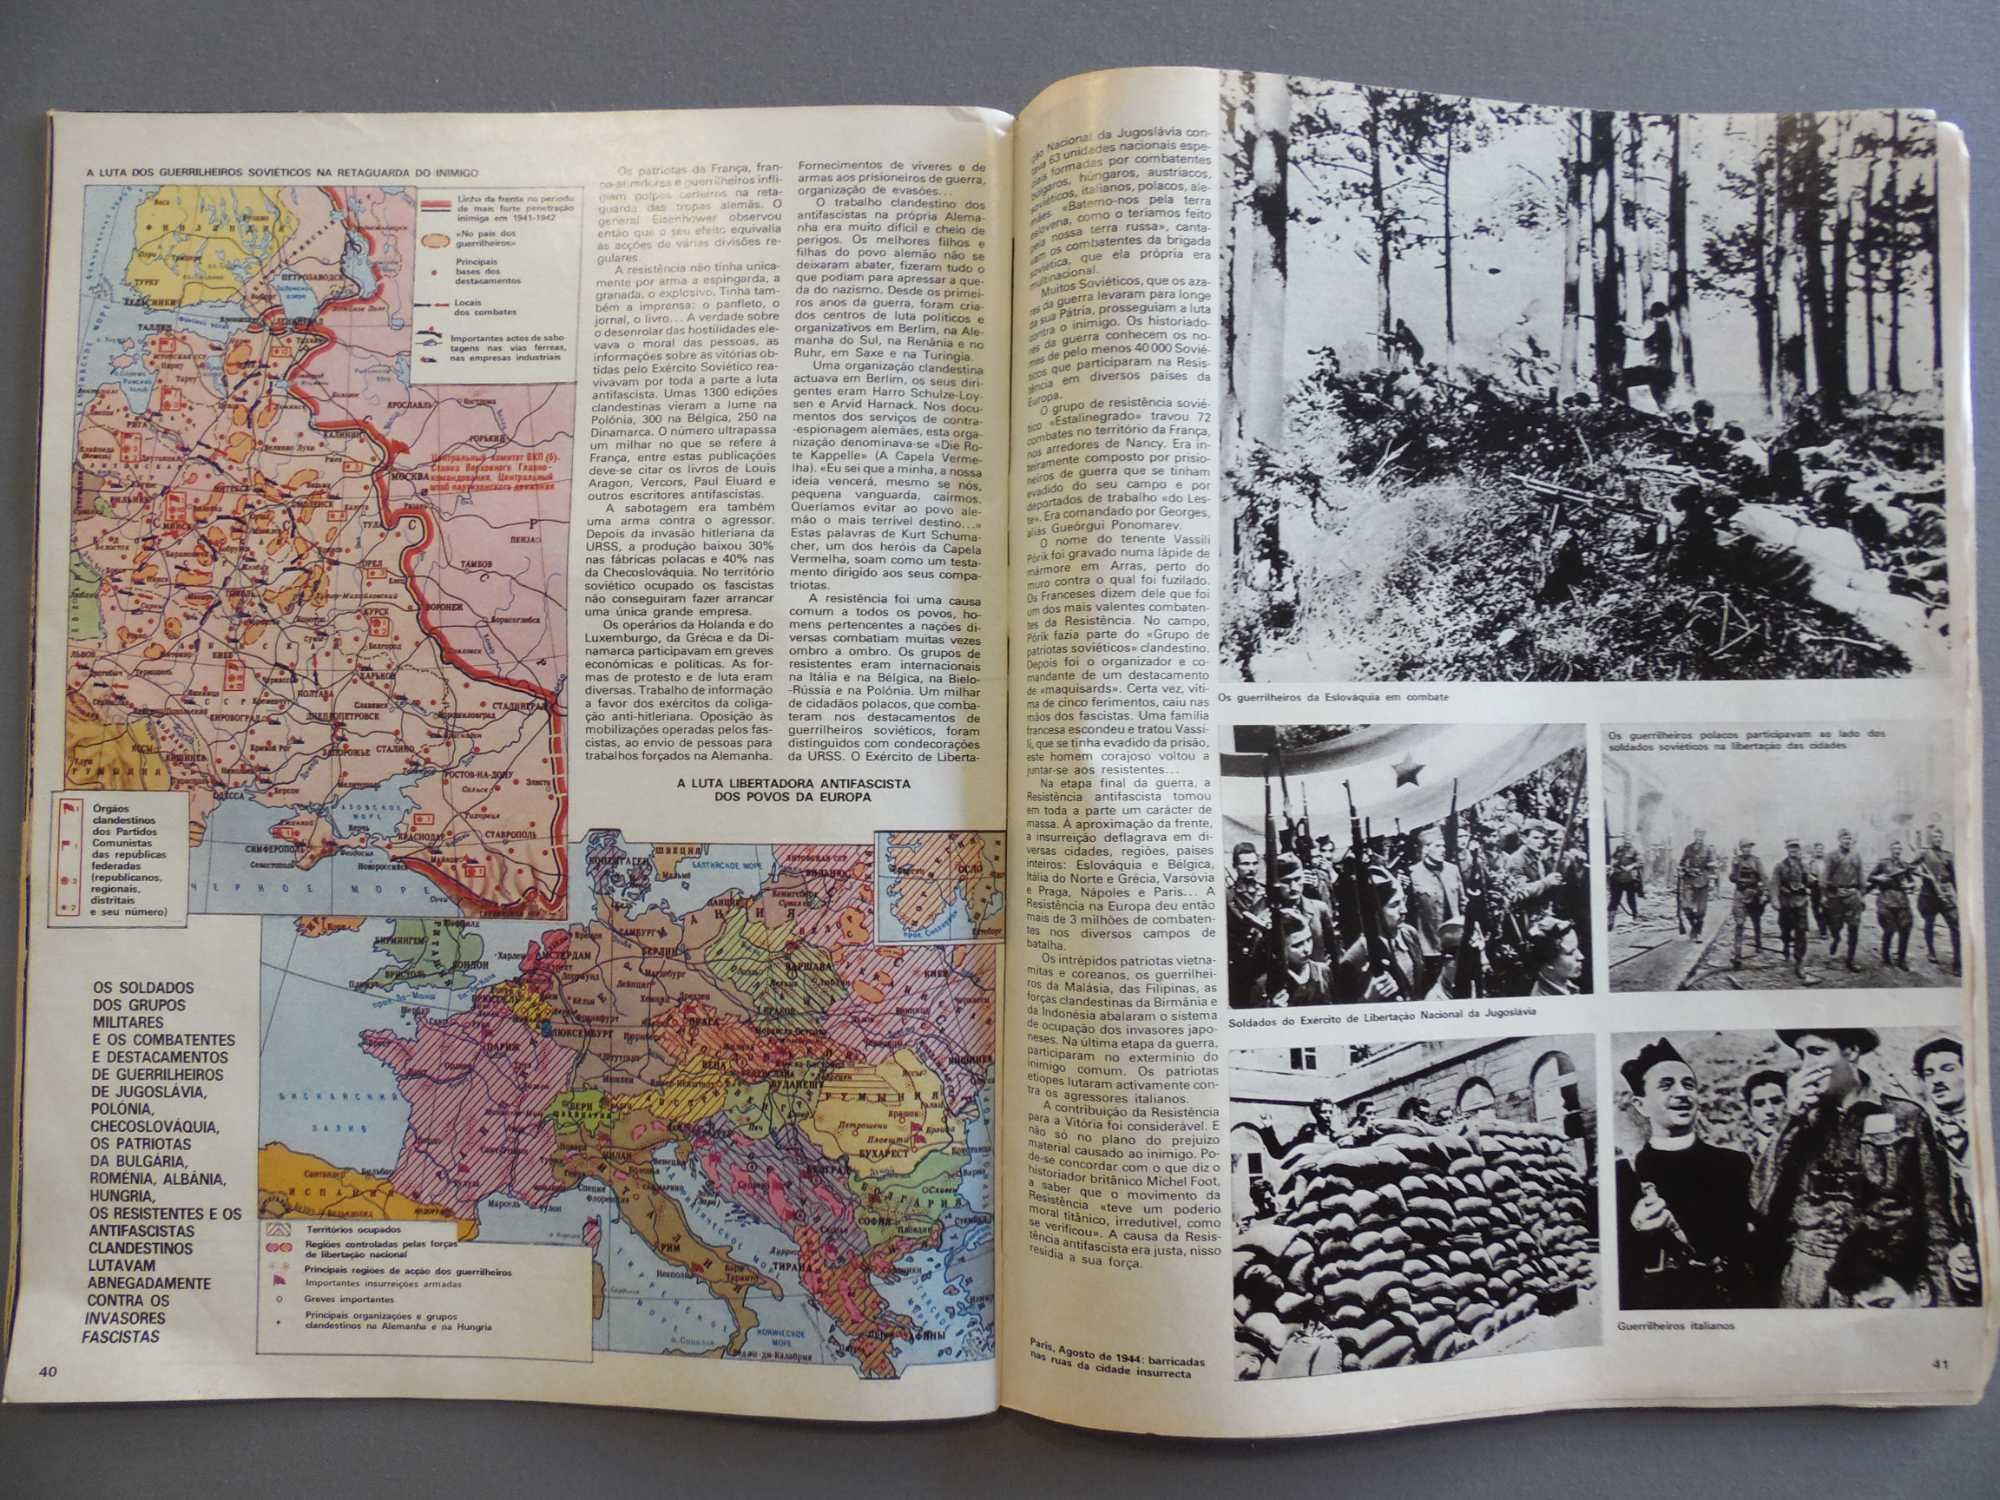 Antigas Revistas, Guias, União Soviética, Guerra Fria, Time, Olímpicos